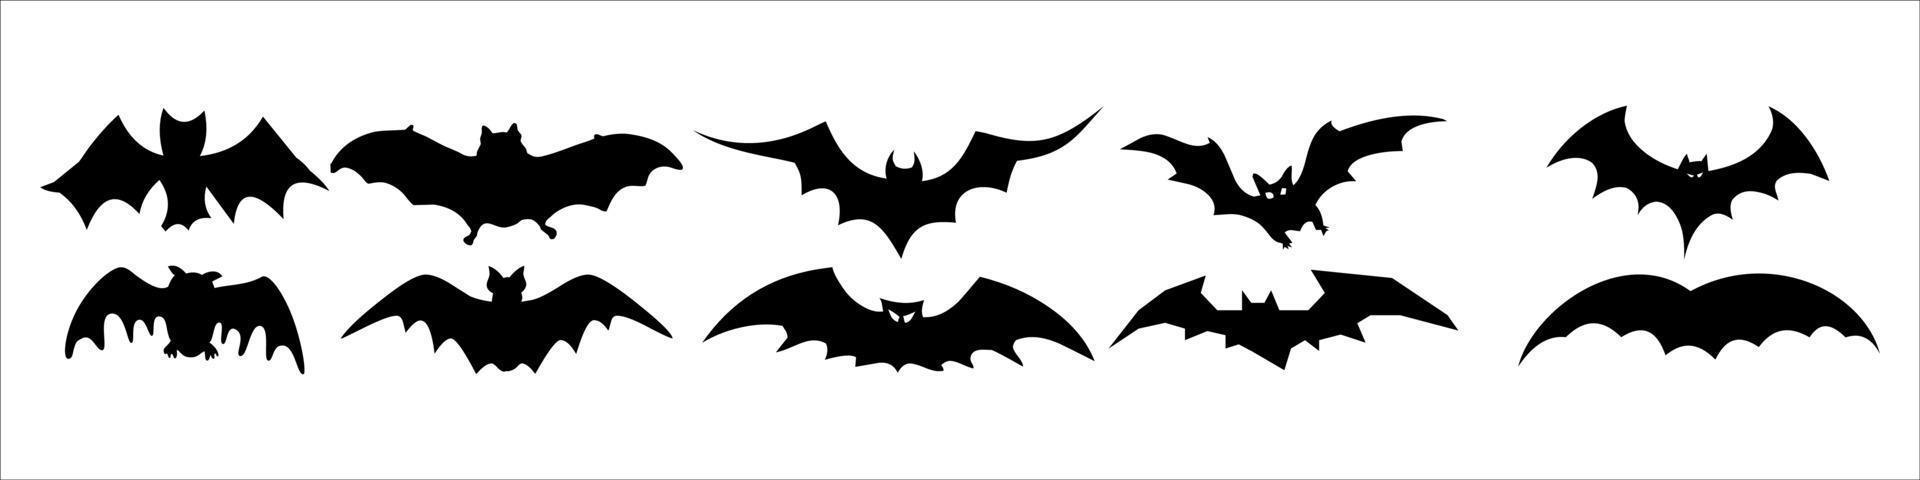 Siluetas negras de murciélagos sobre un fondo blanco. vector